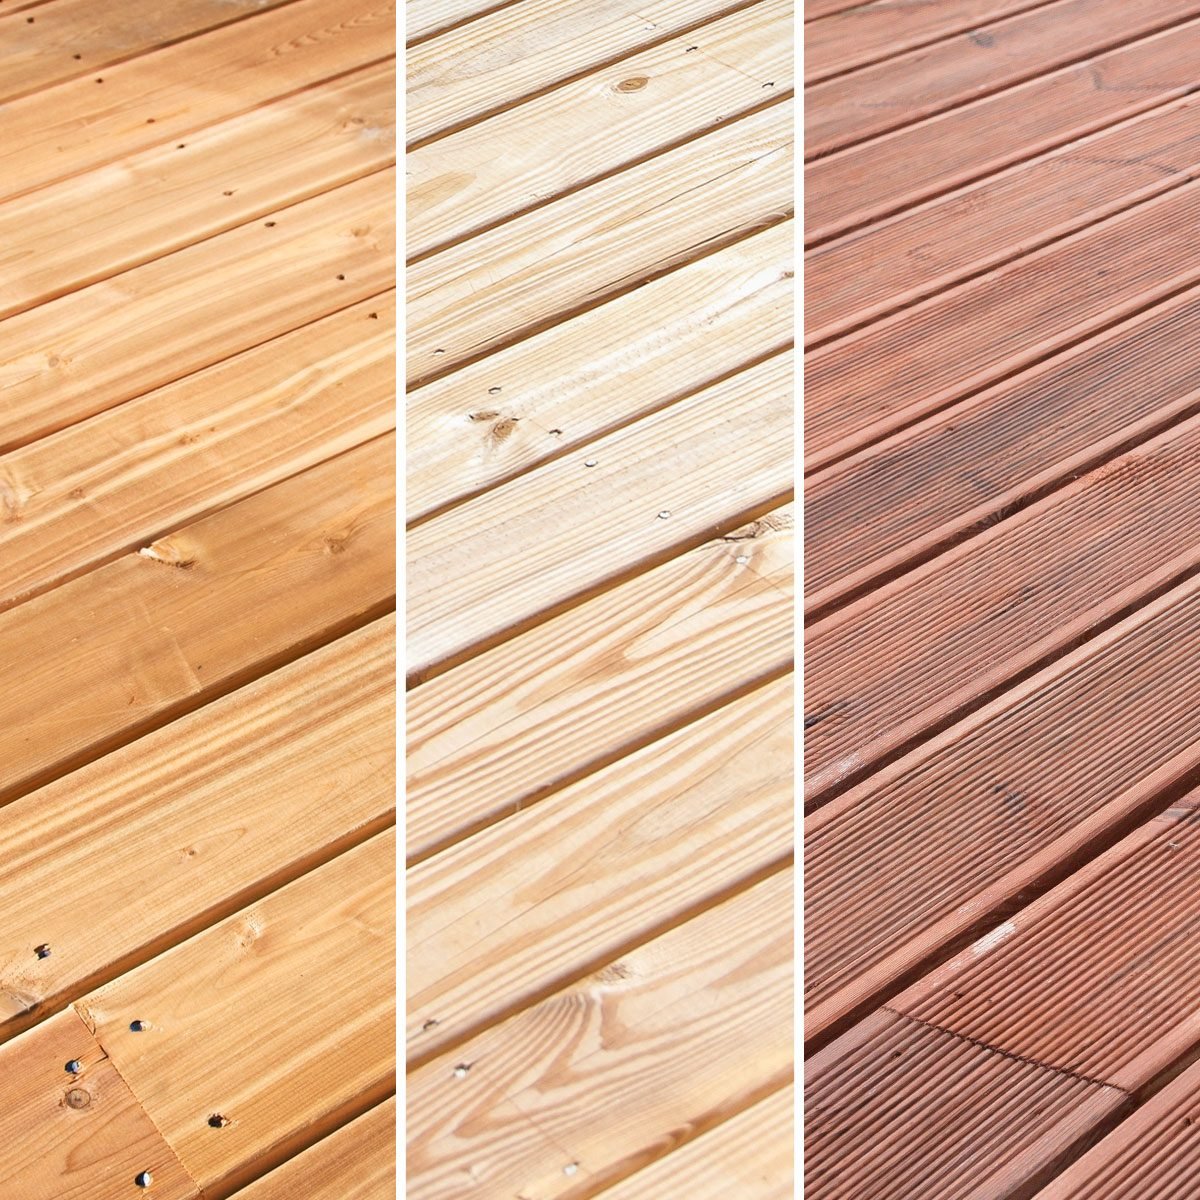 How to Choose Between Cedar, Pressure Treated Wood & Composite Decking